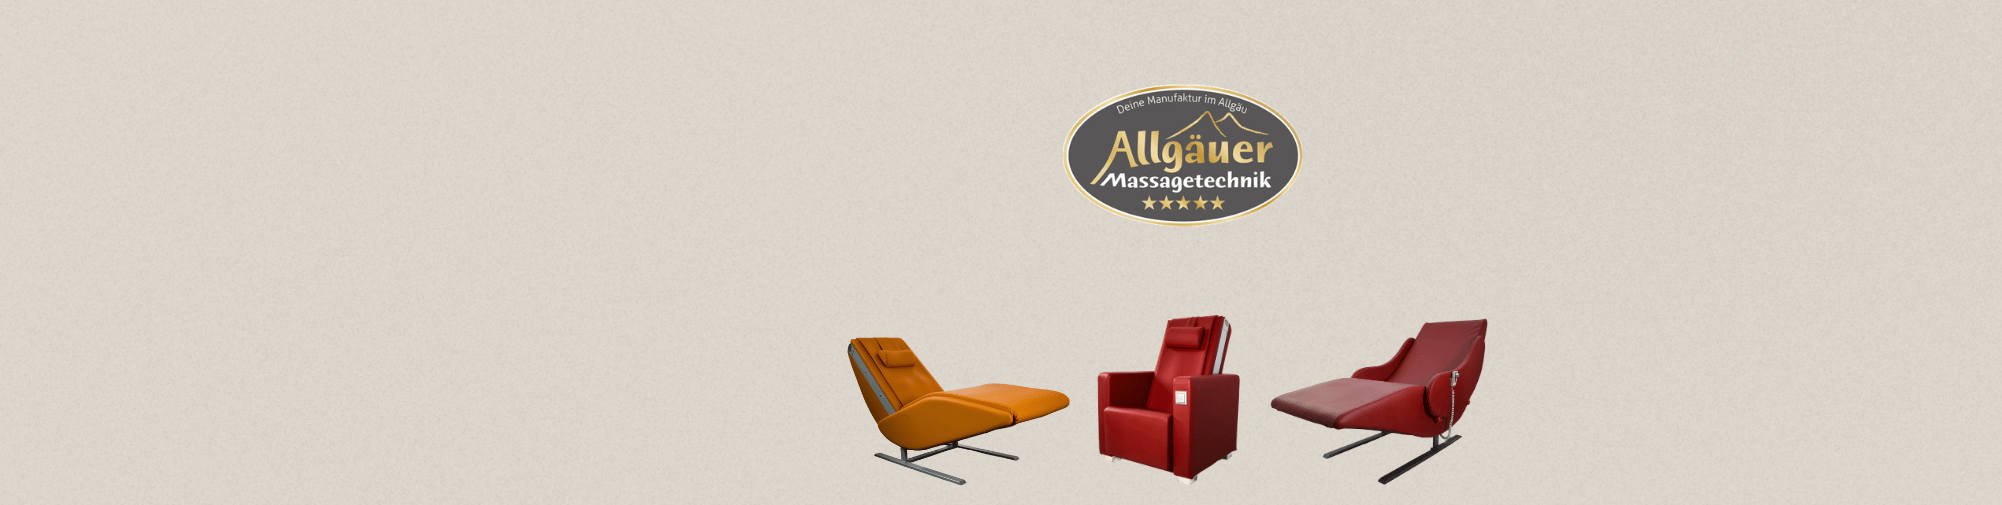 Allgäuer Massagetechnik - ماساژ صندلی جهان